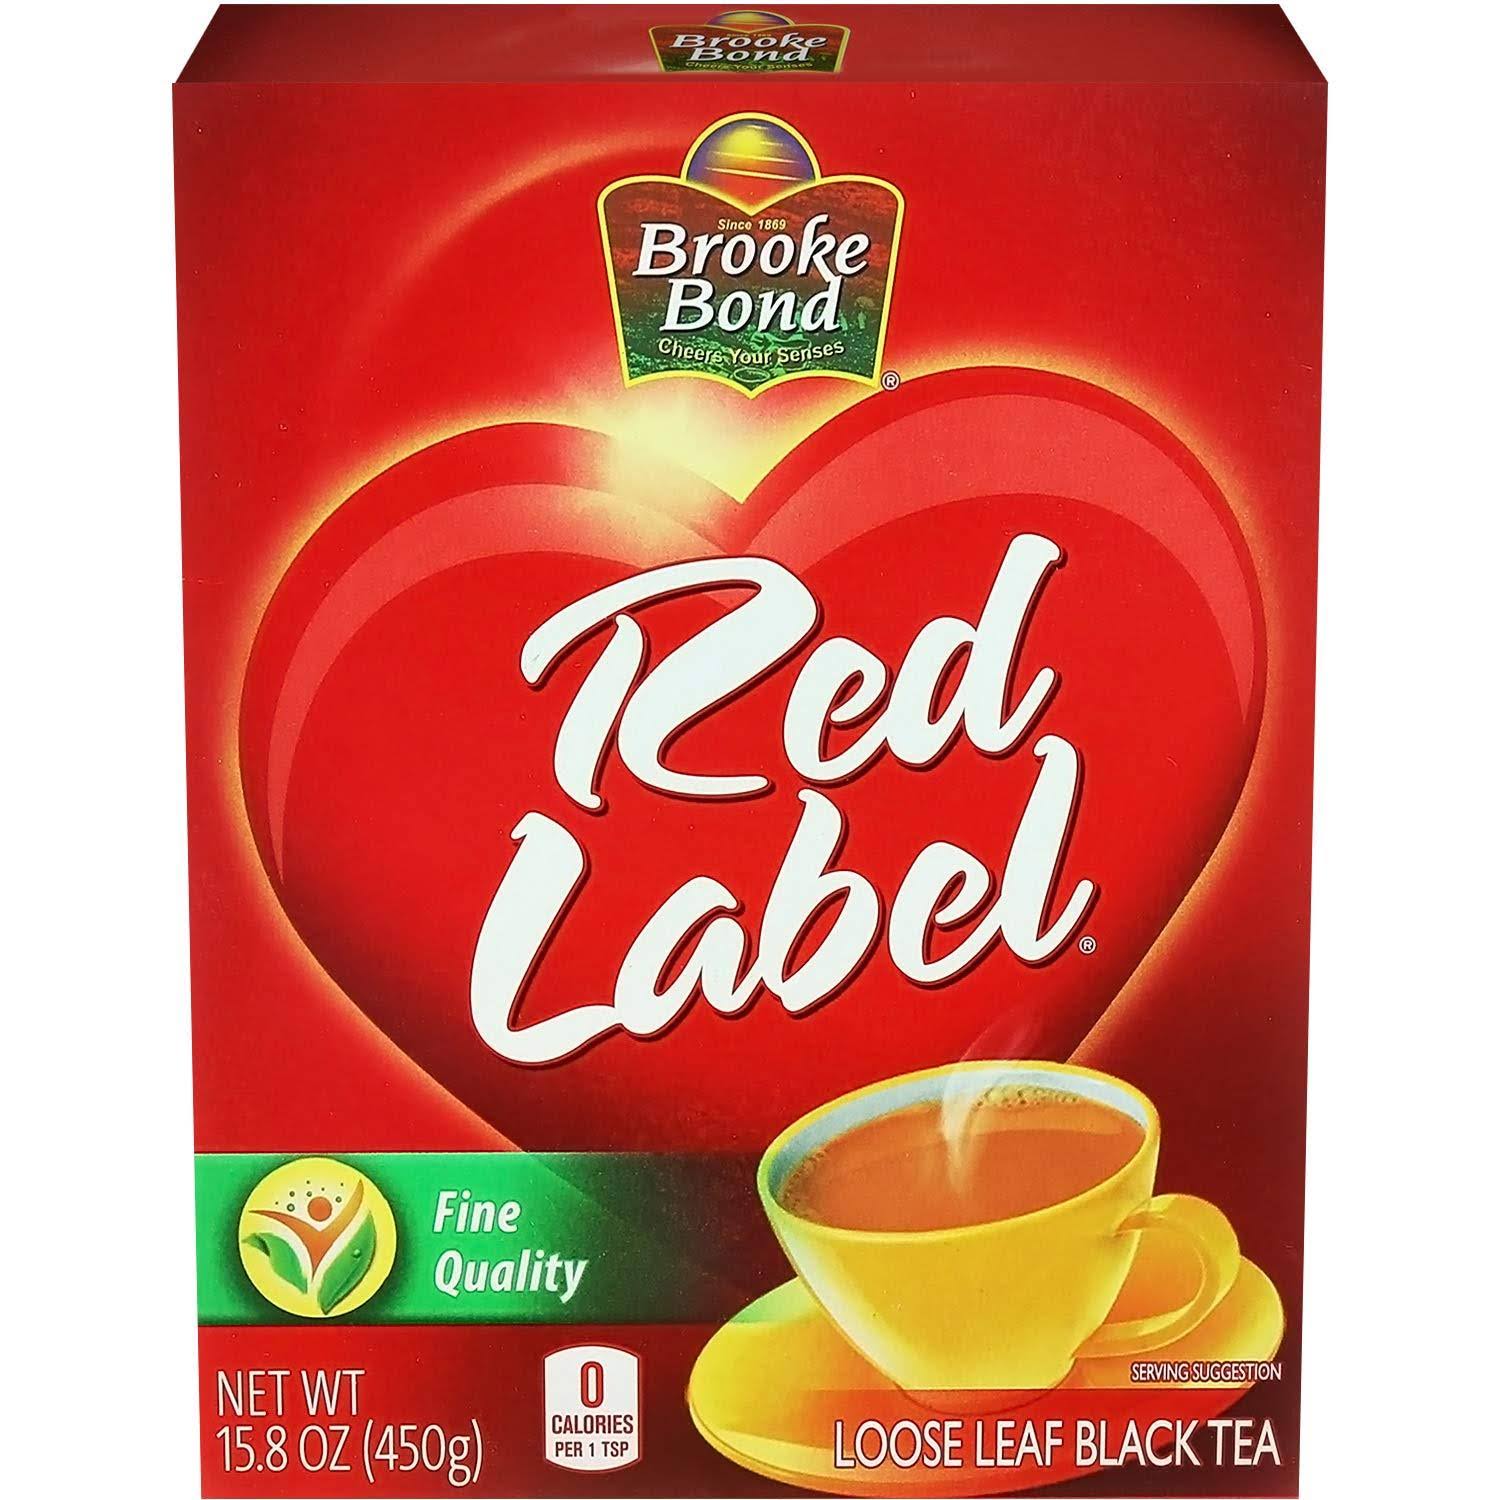 Brooke Bond, Red Label Loose Leaf Black Tea, 450g